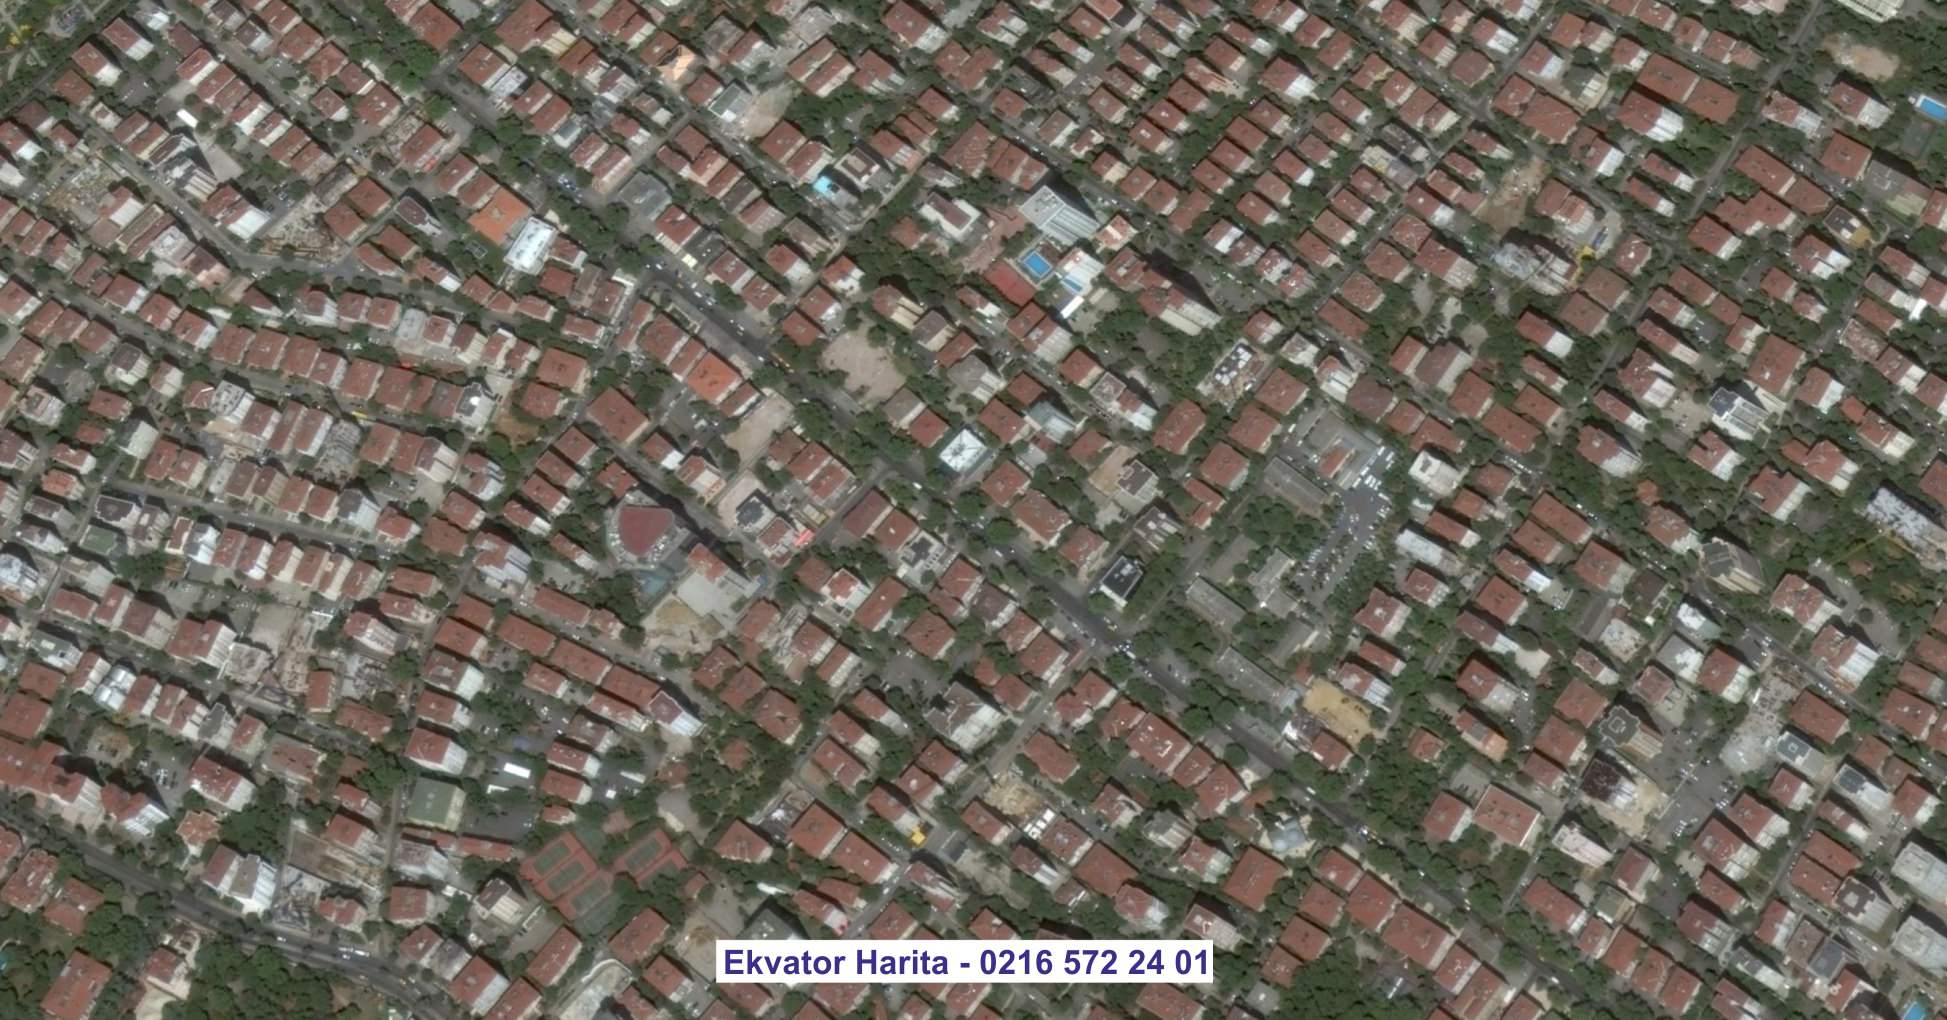 Tire Uydu Görüntüsü Örnek Fotoğrafı